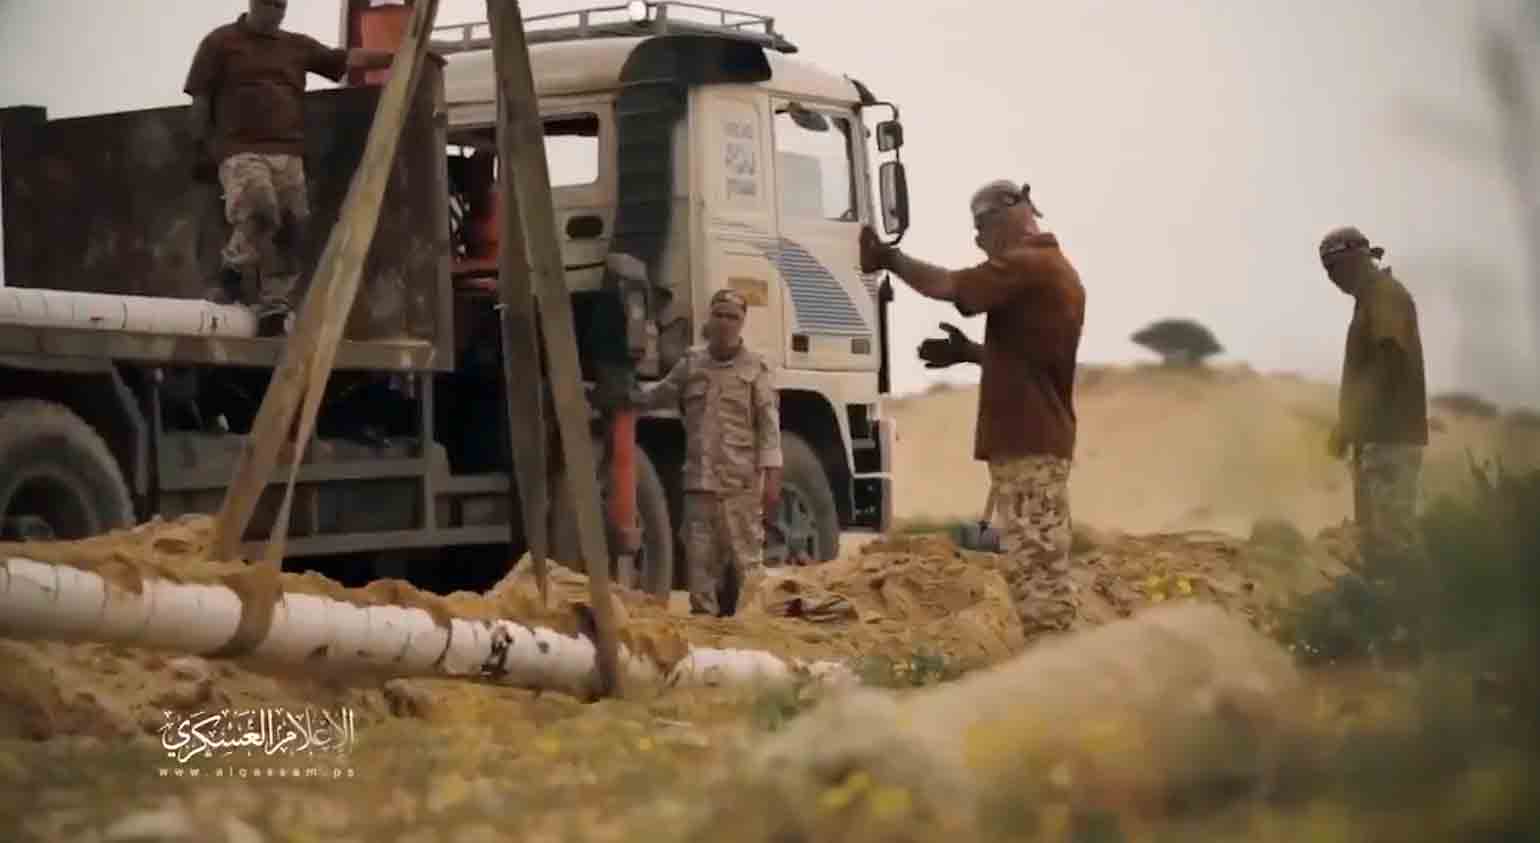 वीडियो दिखा रहा है कि हमास कैसे नाली के ढांचे से निकाली गई ट्यूब्स से रॉकेट बना रहा है। तस्वीर और वीडियो: ट्विटर से पुनर्प्रतिष्ठा